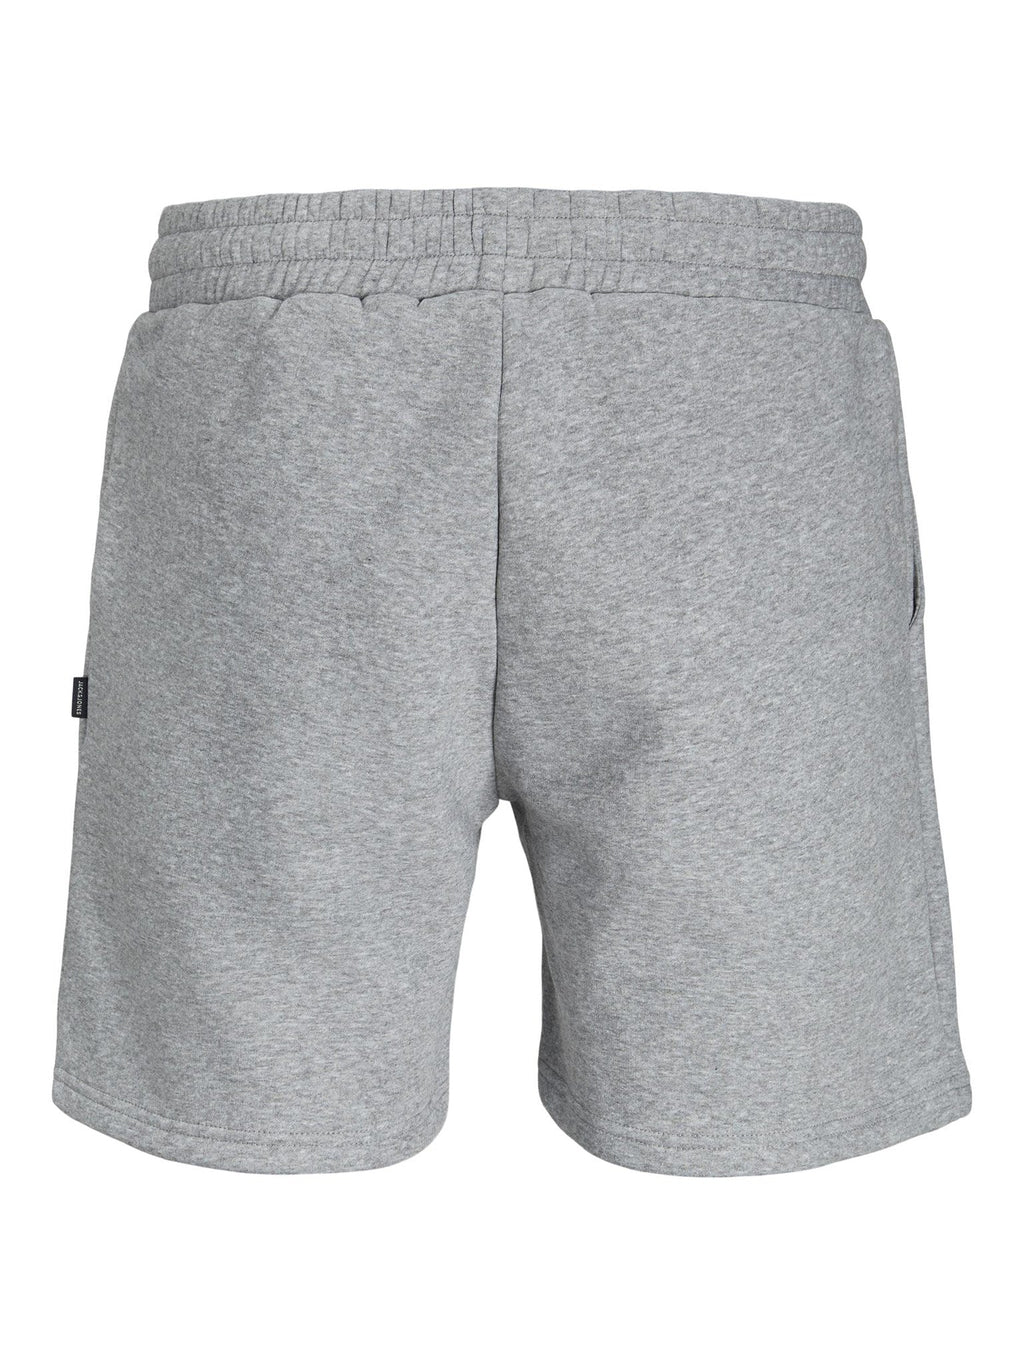 星汗短裤 - 浅灰色混合物